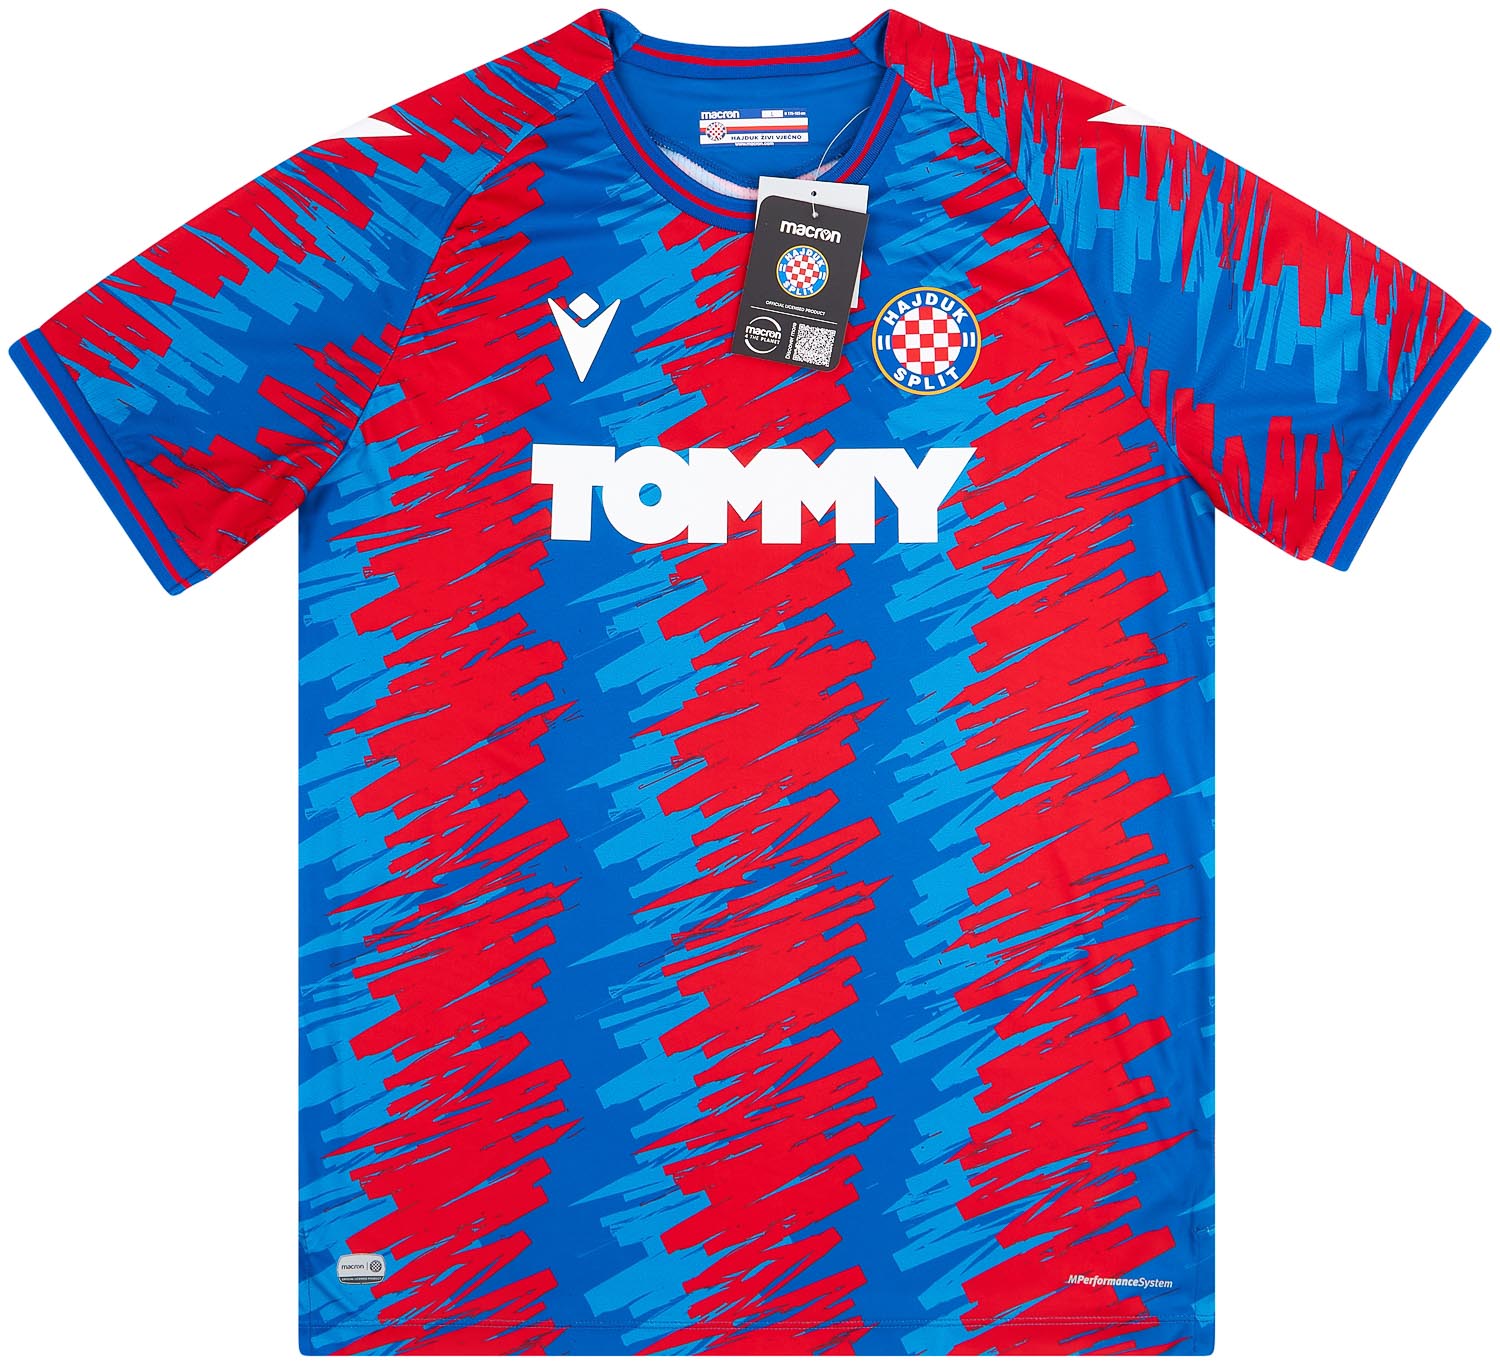 22-23 Hajduk Split Home Shirt - Soccer Shop Europe 